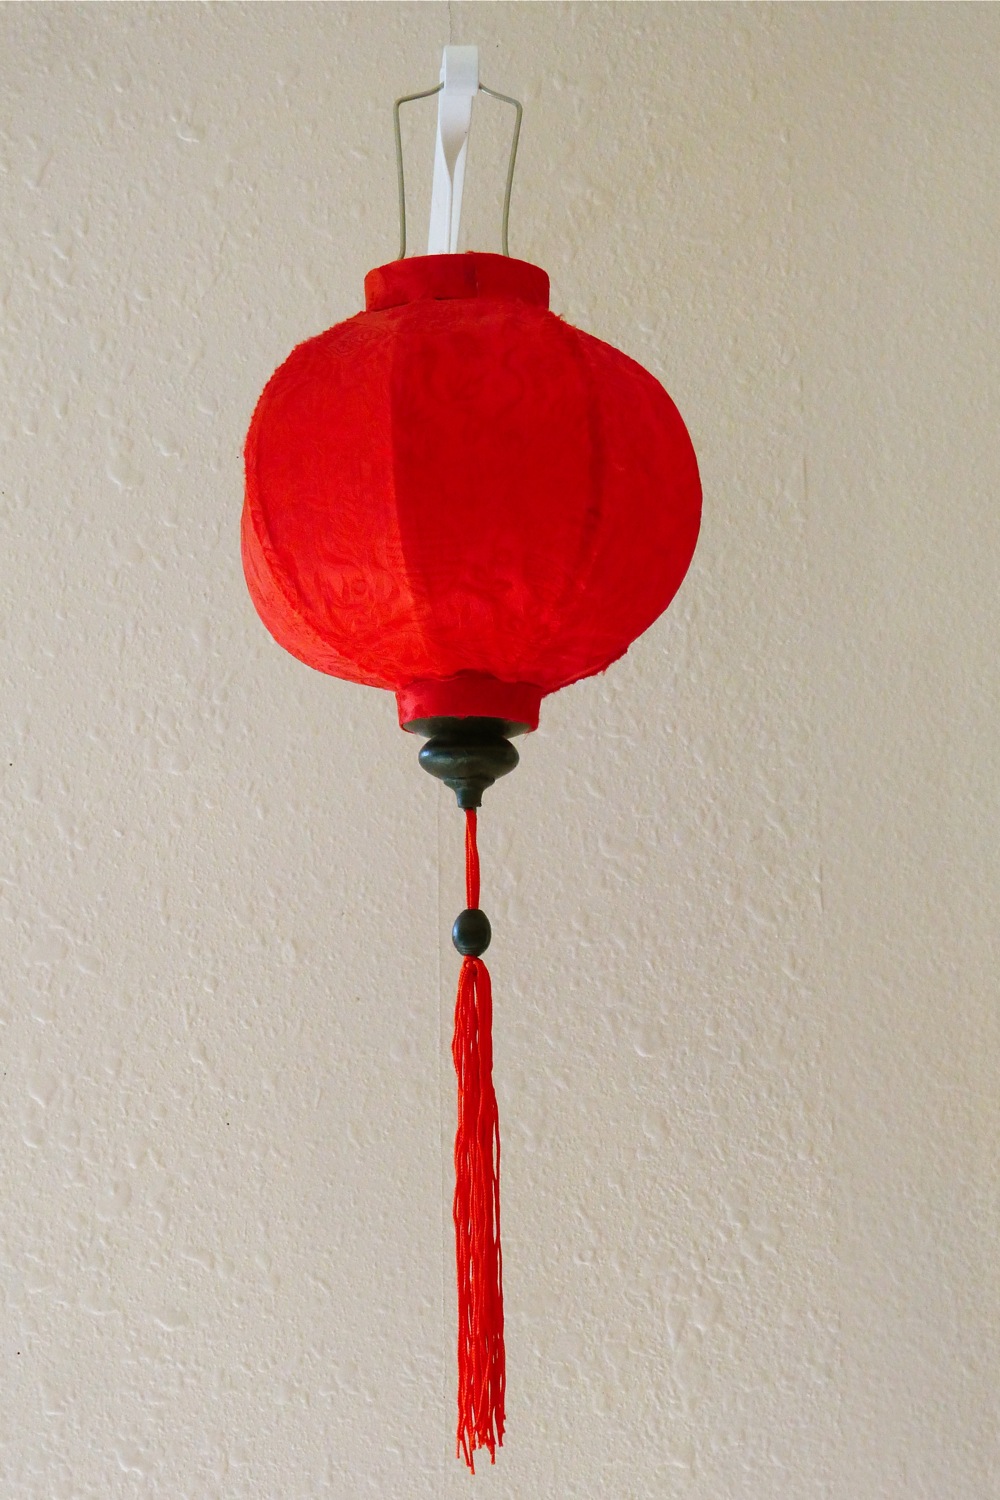 Oriental lantern, red Oriental lantern, decorative fabric lantern, decorative red fabric Oriental lantern